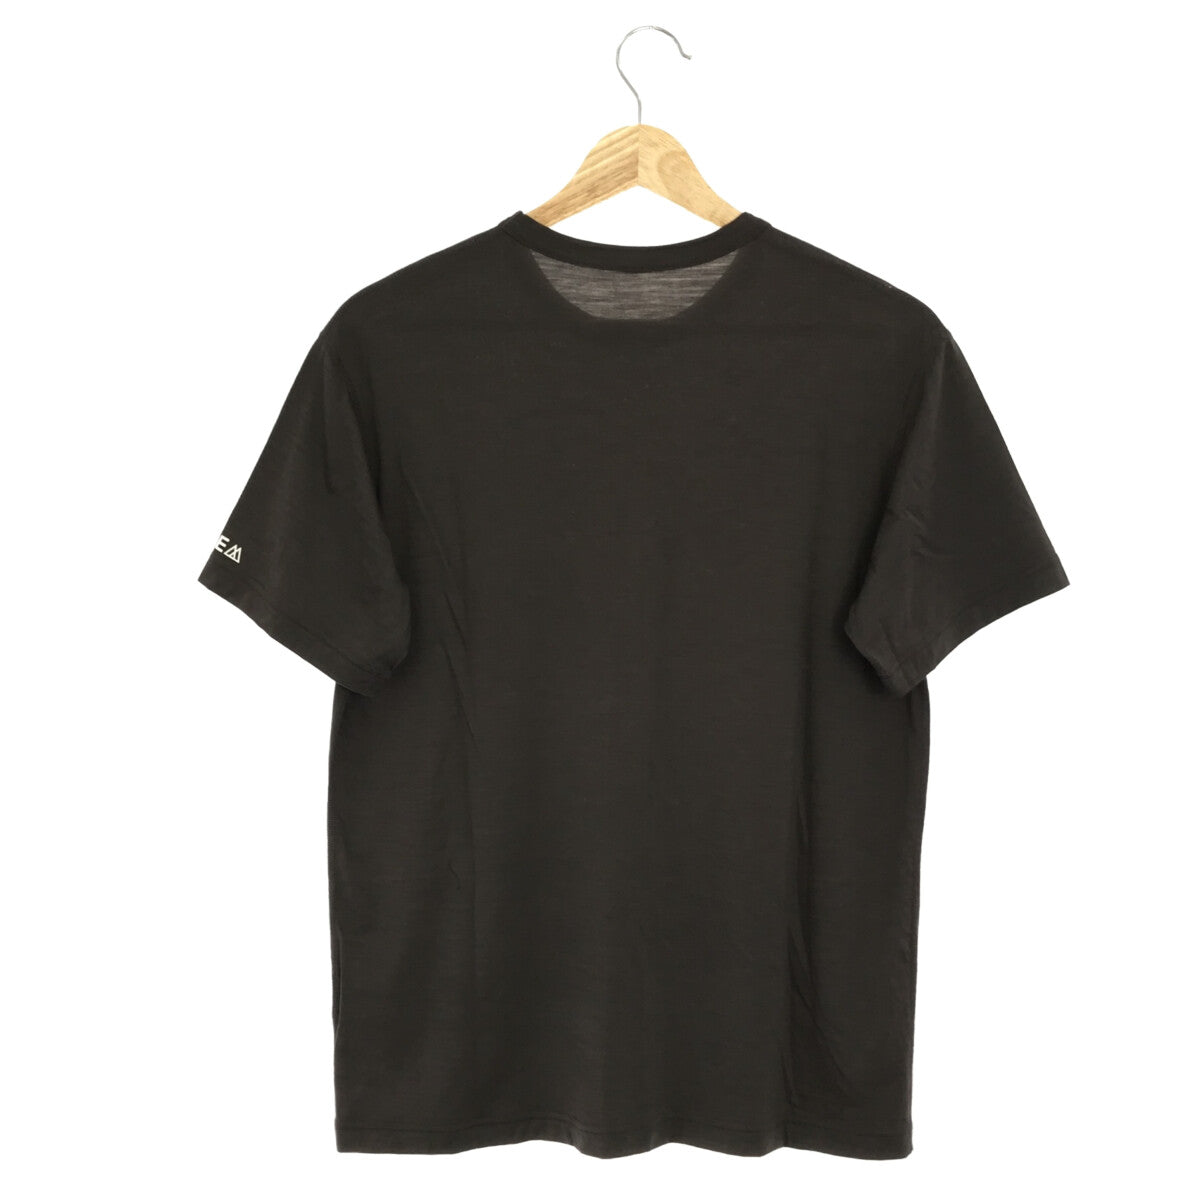 RIDGE MOUNTAIN GEAR / リッジ マウンテン ギア | GEAR Merino Basic Tee Short Sleeve / メリノウール ベーシック カットソー Tシャツ | S |